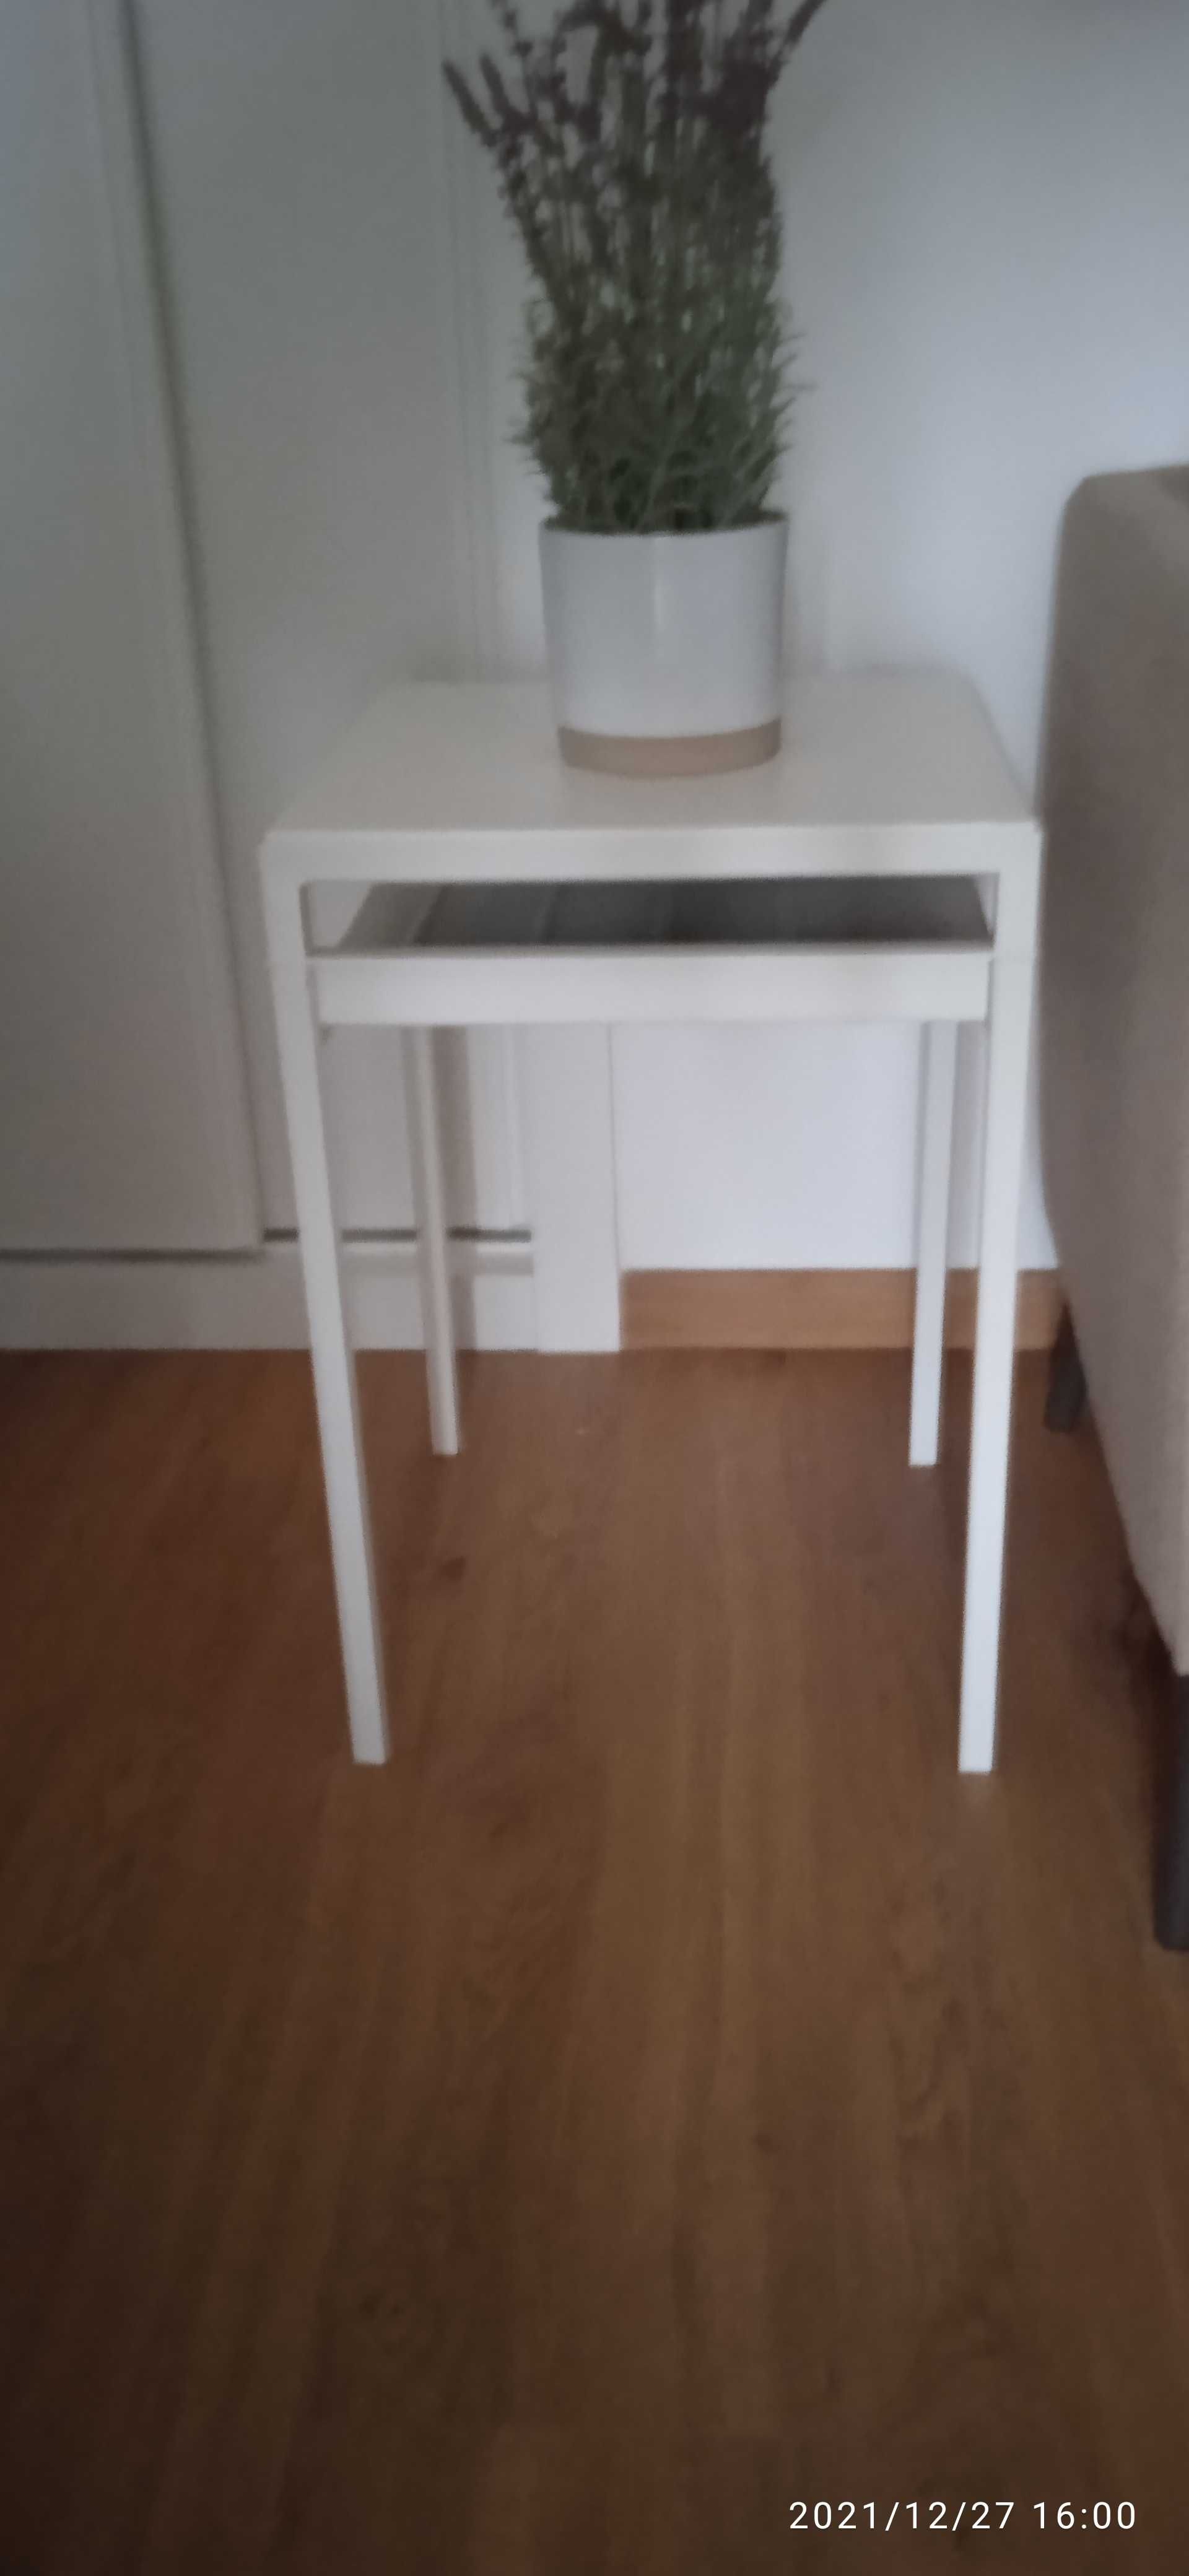 Mesa de apoio IKEA 25 euros